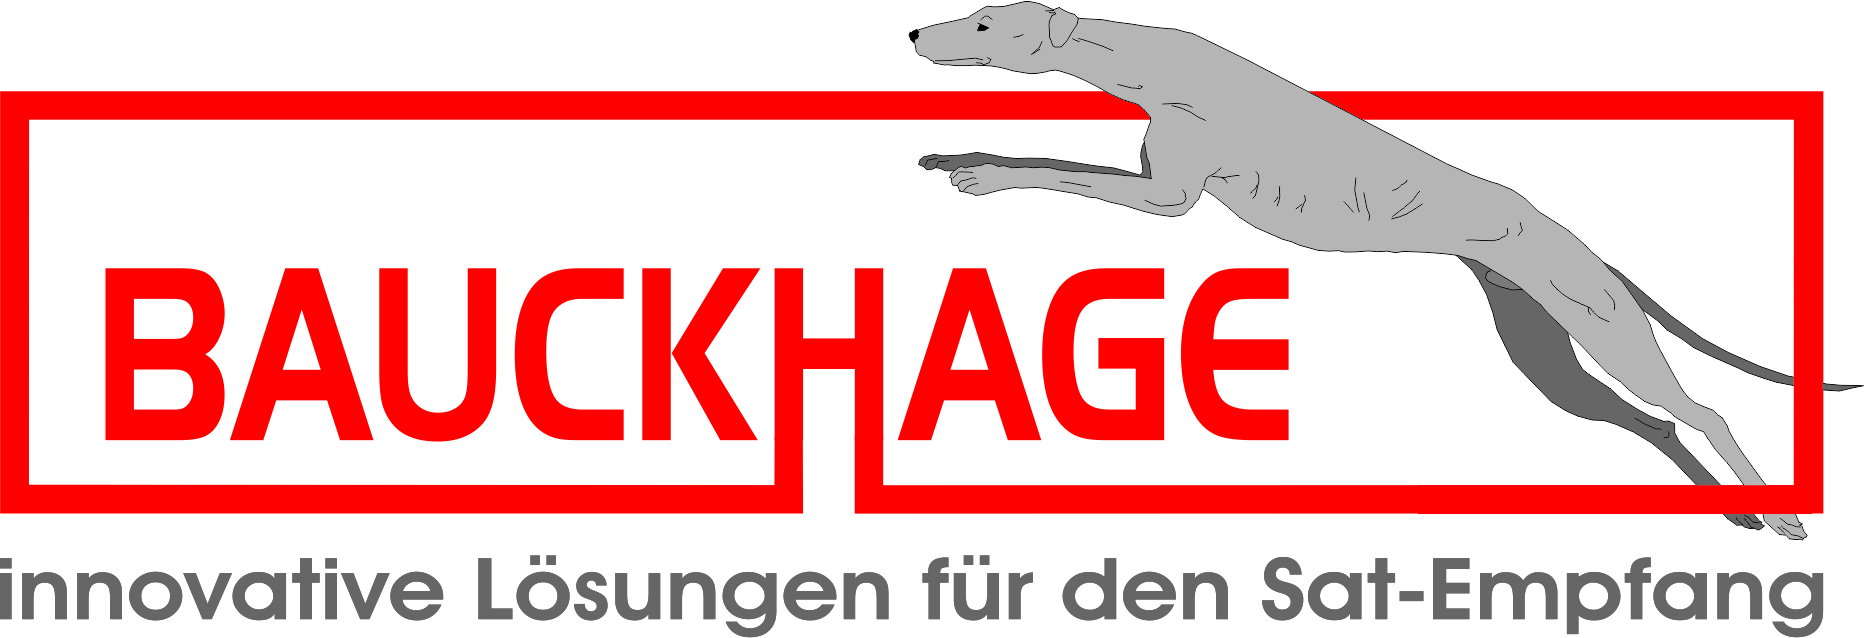 Bauckhage-Logo